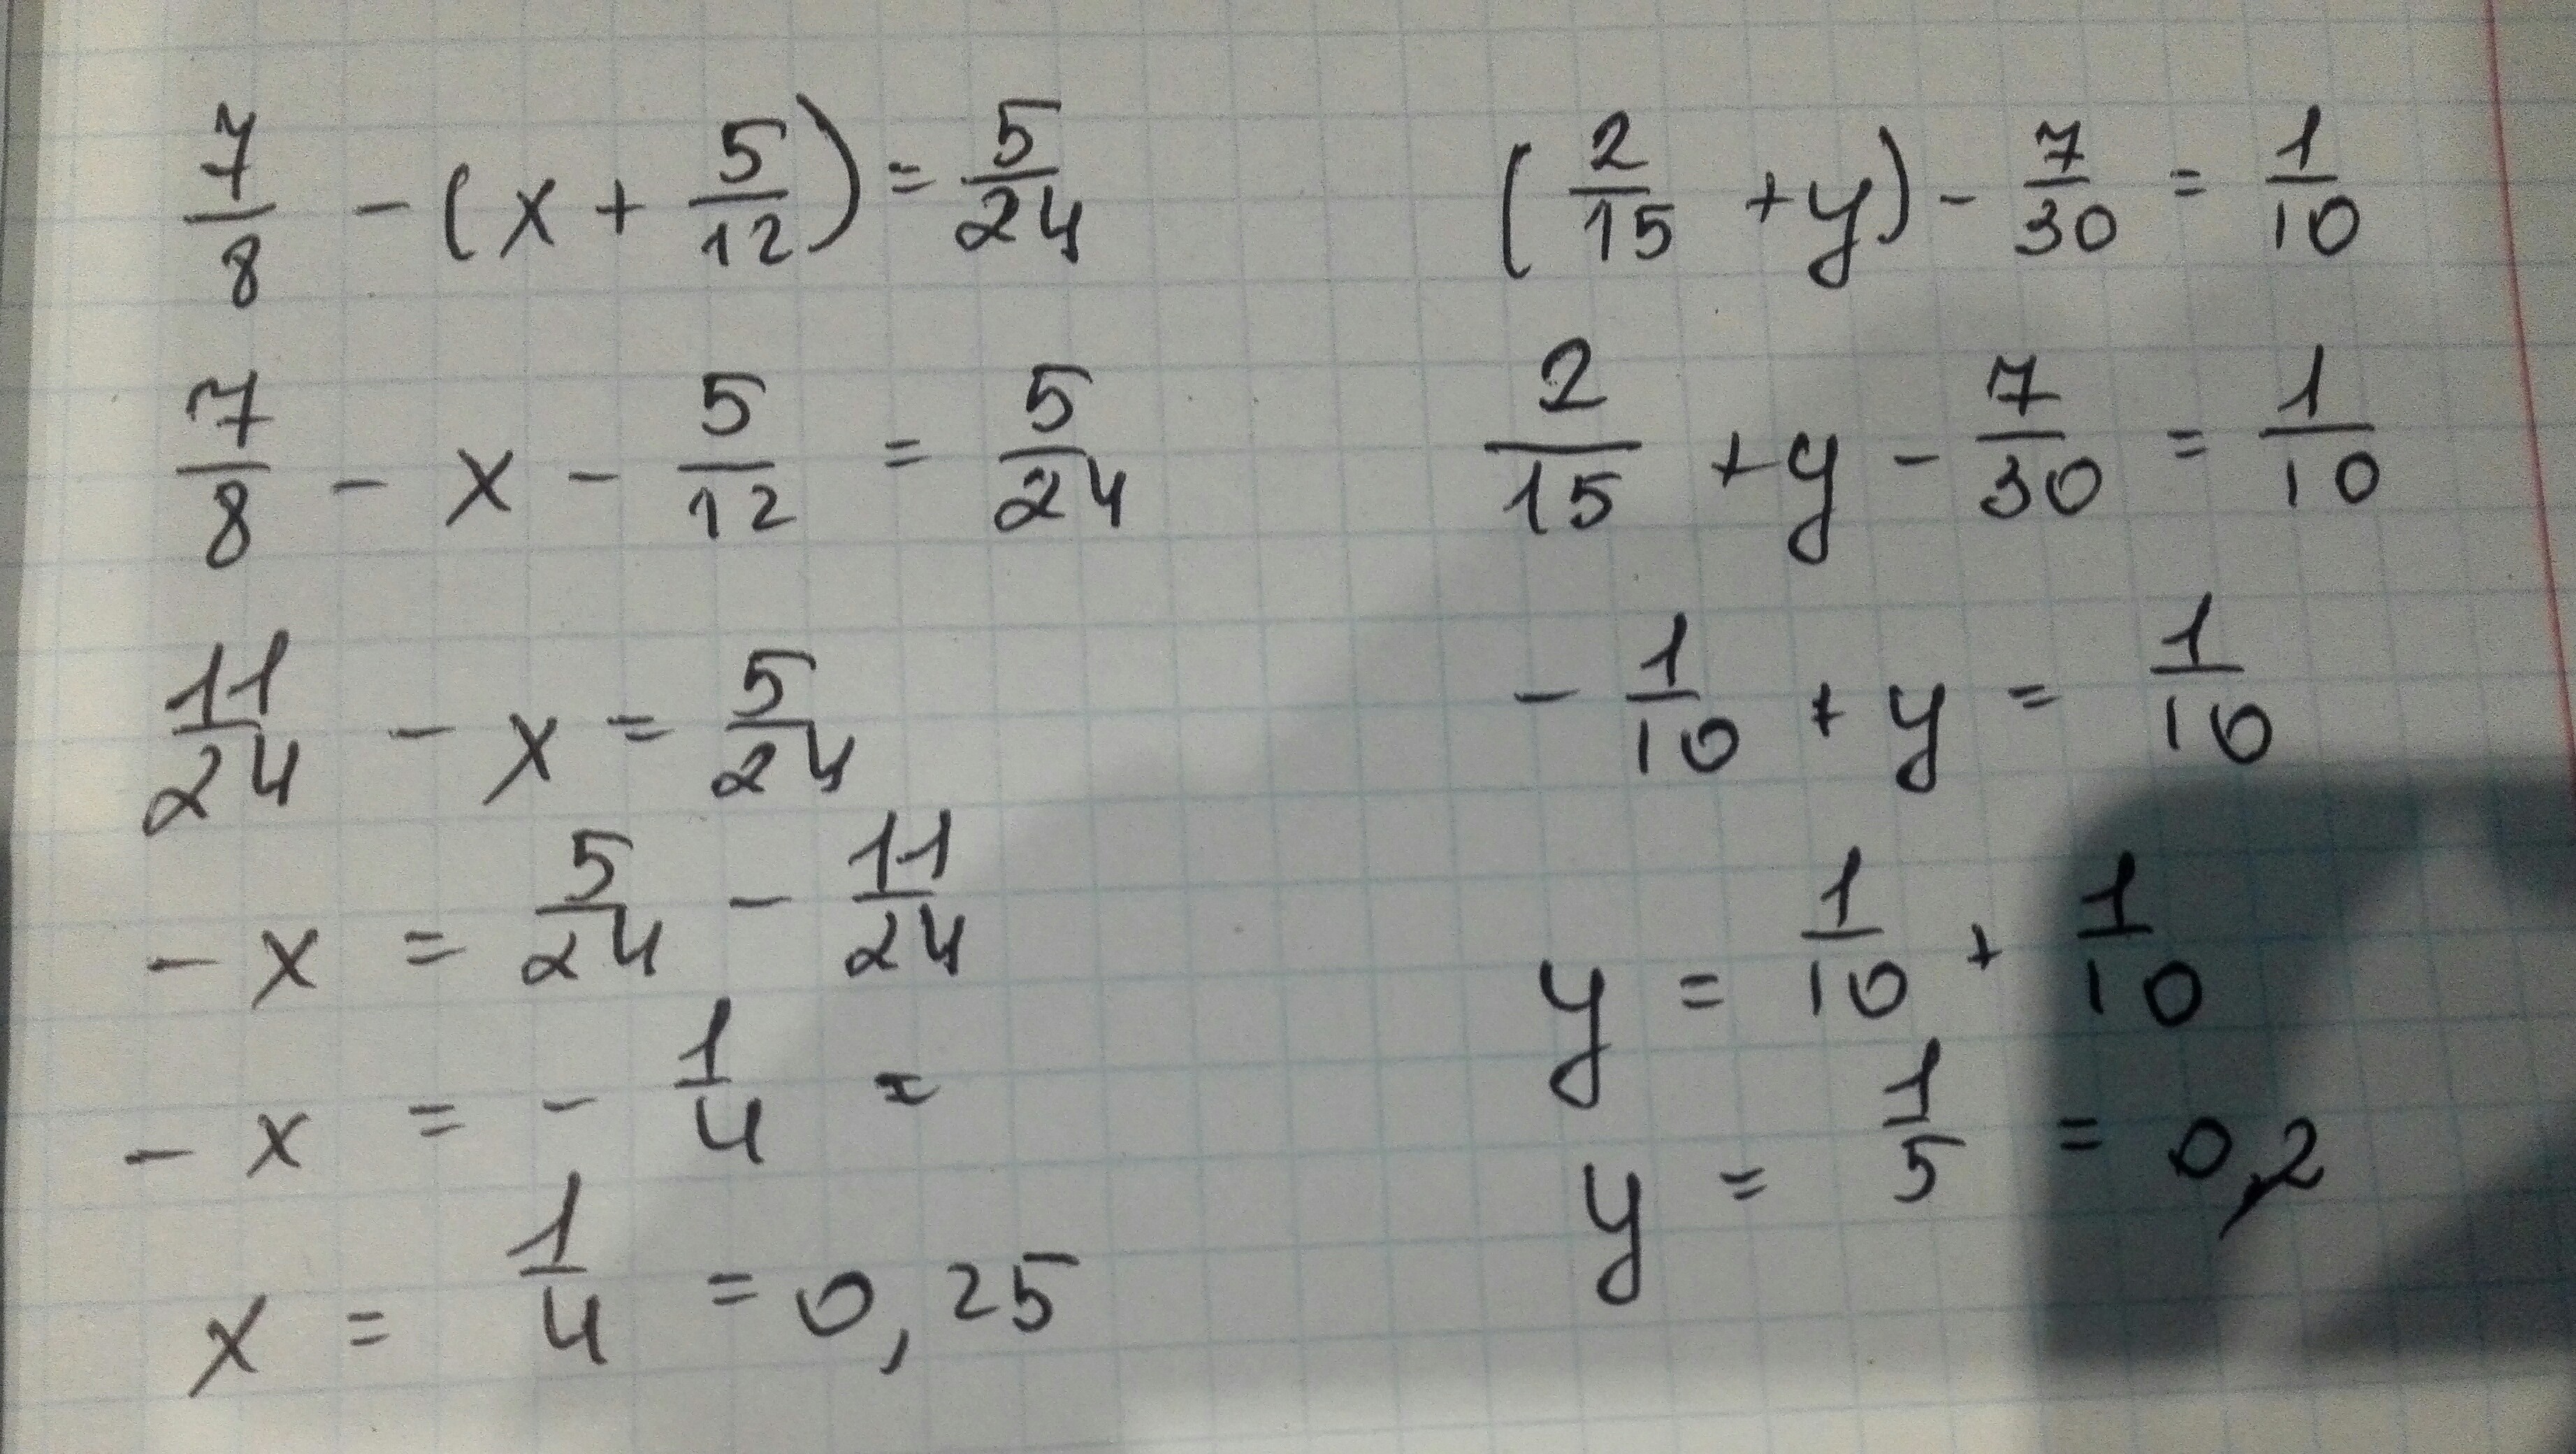 5 7 8 15 решение. ( 2/15+1 7/12) ×30/103-2 2 1/4 ×9/32+2 1/3 решение. (2/15+1 7/12)*30/103-2:2 1/4*9/32+2 1/3. ( 15 2 + 1 12 7 ) ⋅ 103 30 − 2 : 2 4 1 ⋅ 32 9 + 2 4 3. 10) -30-(12-2x)=8-2x.